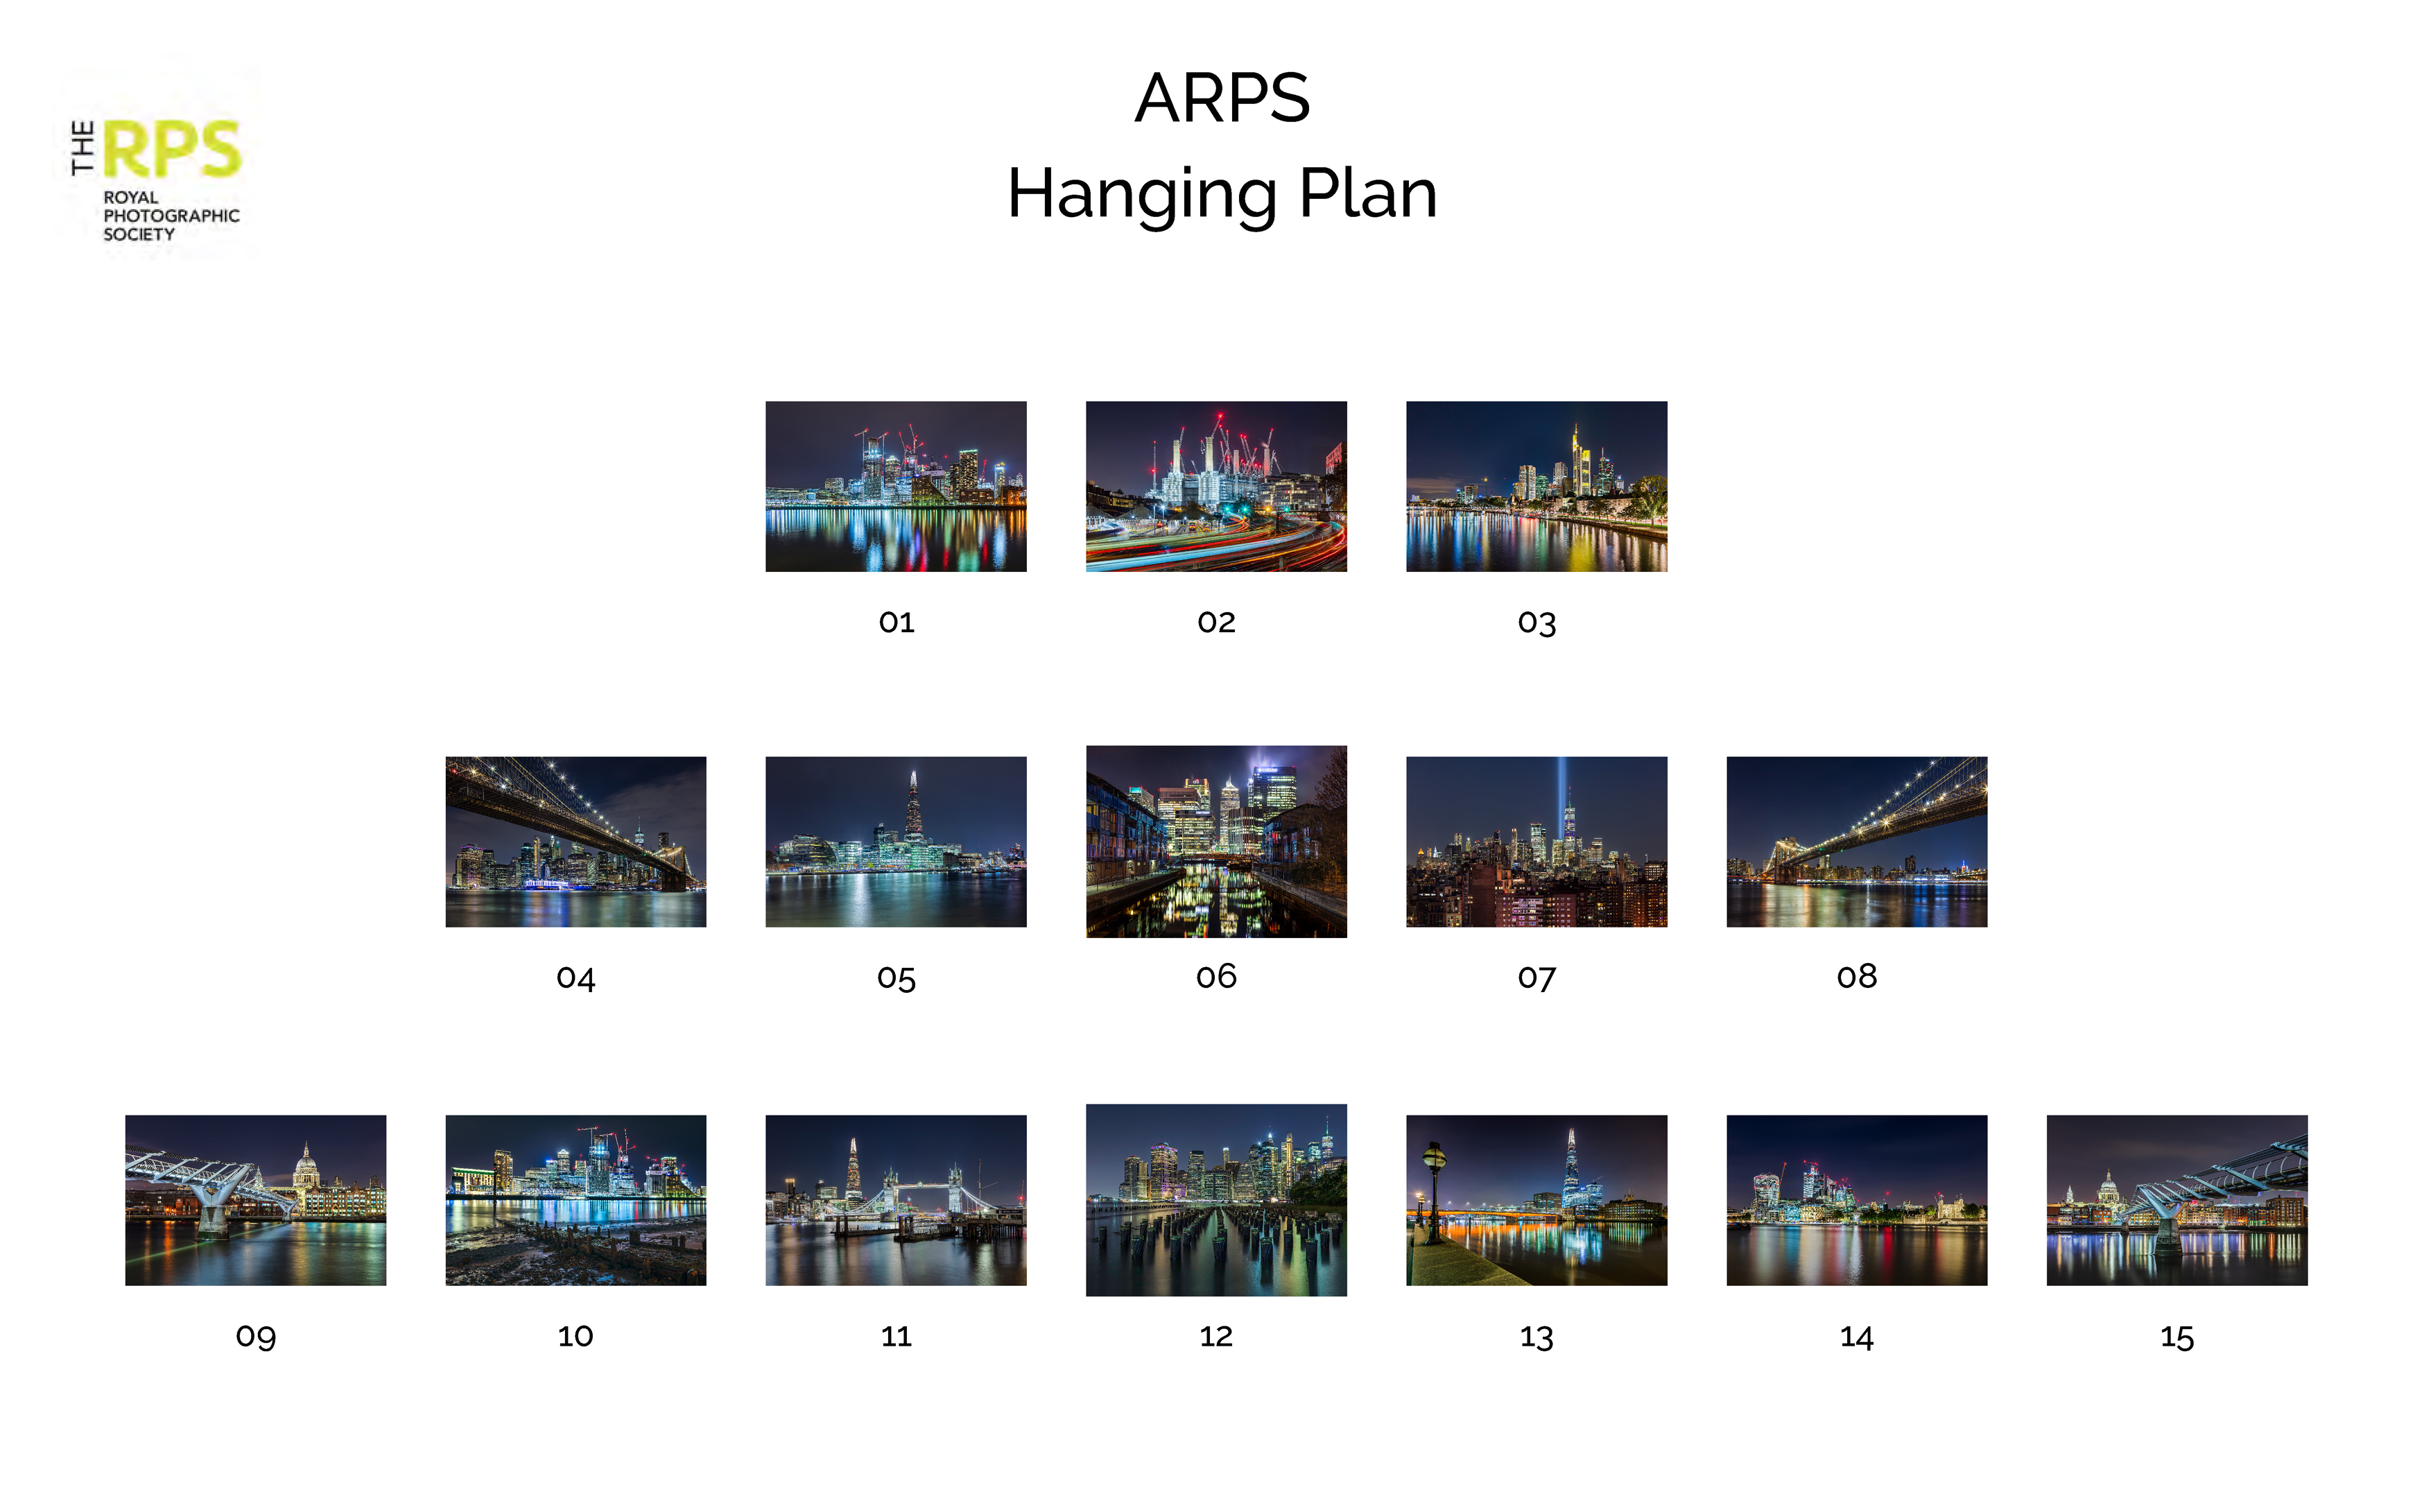 01 A ARPS Hanging Plan